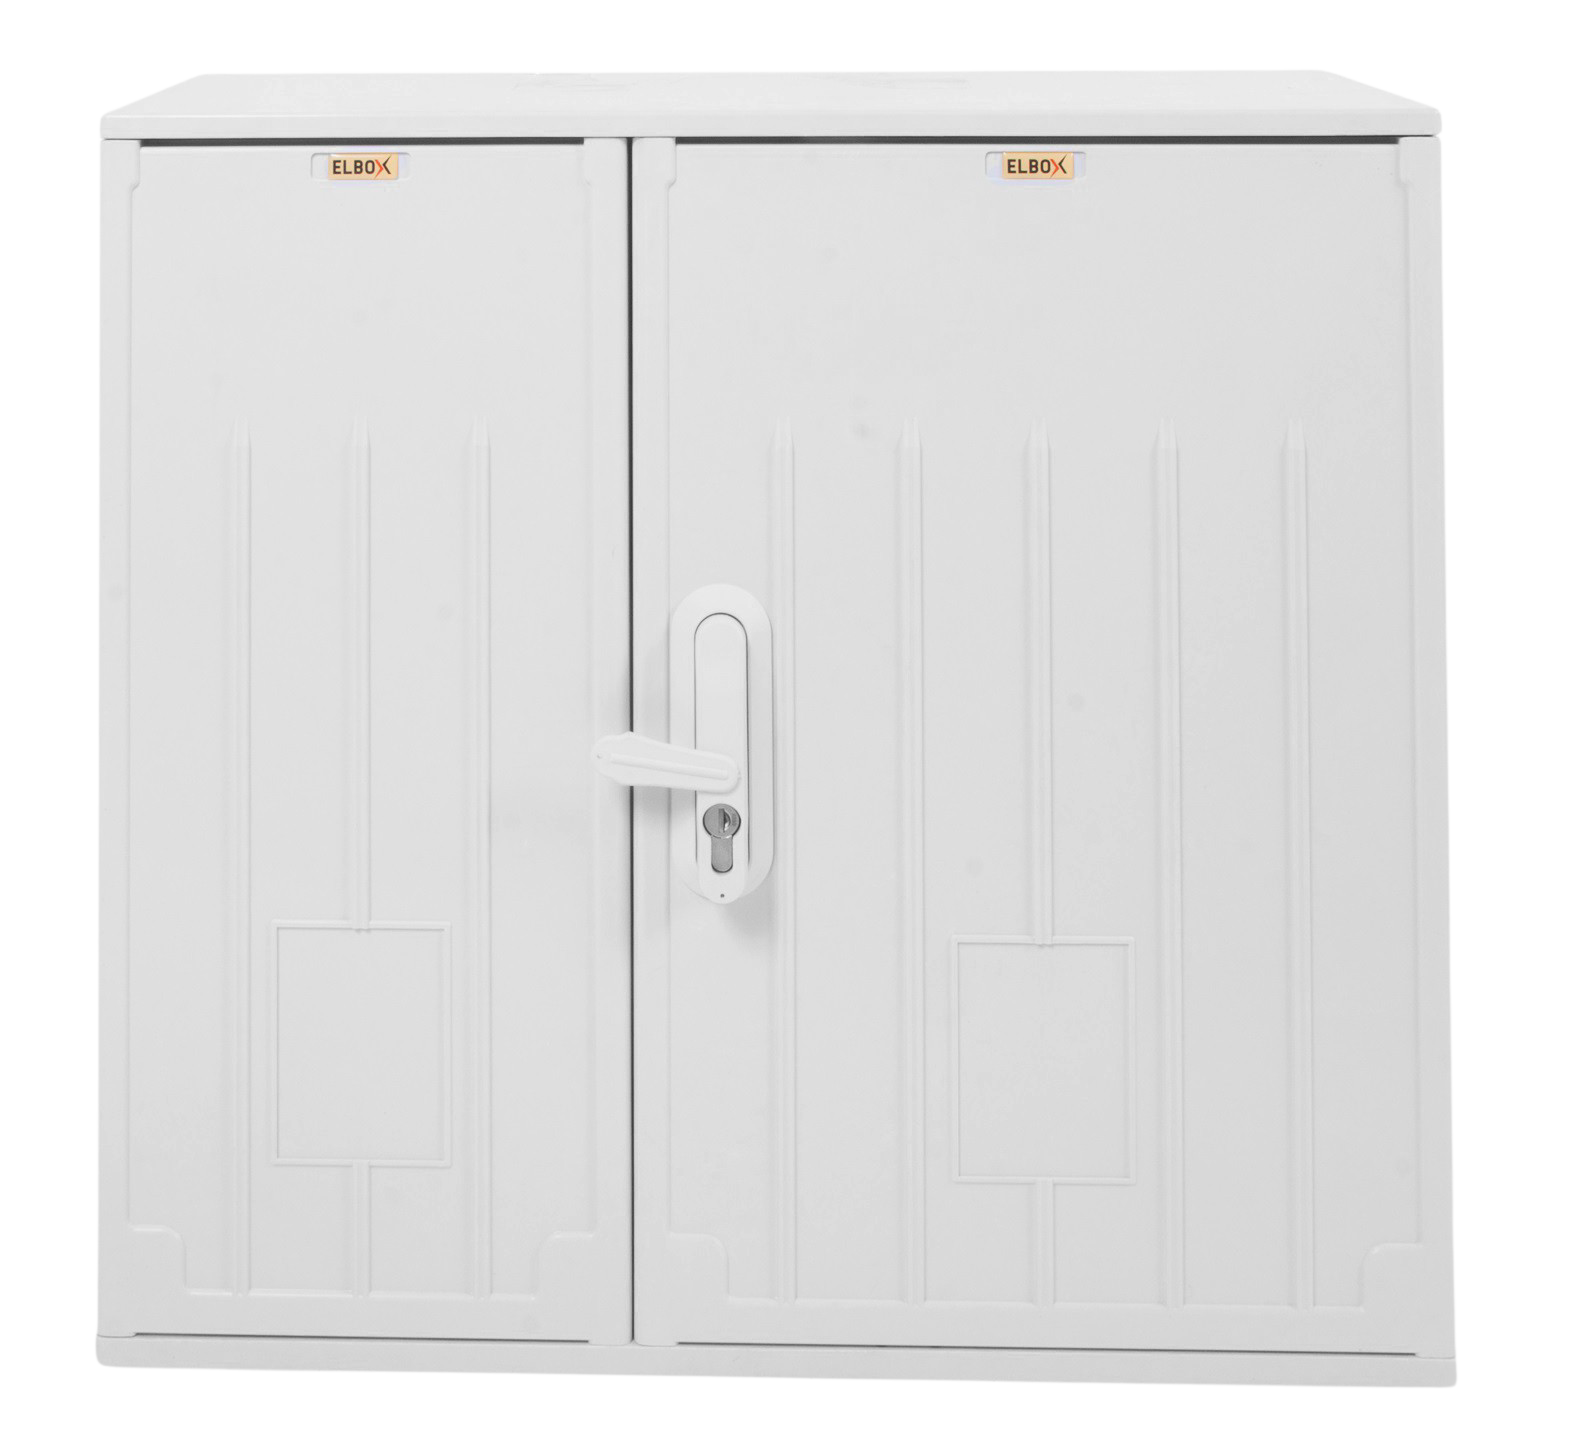 Электротехнический шкаф полиэстеровый IP54 антивандальный (В600*Ш600*Г250) EPV с двумя дверьми от ЦМО